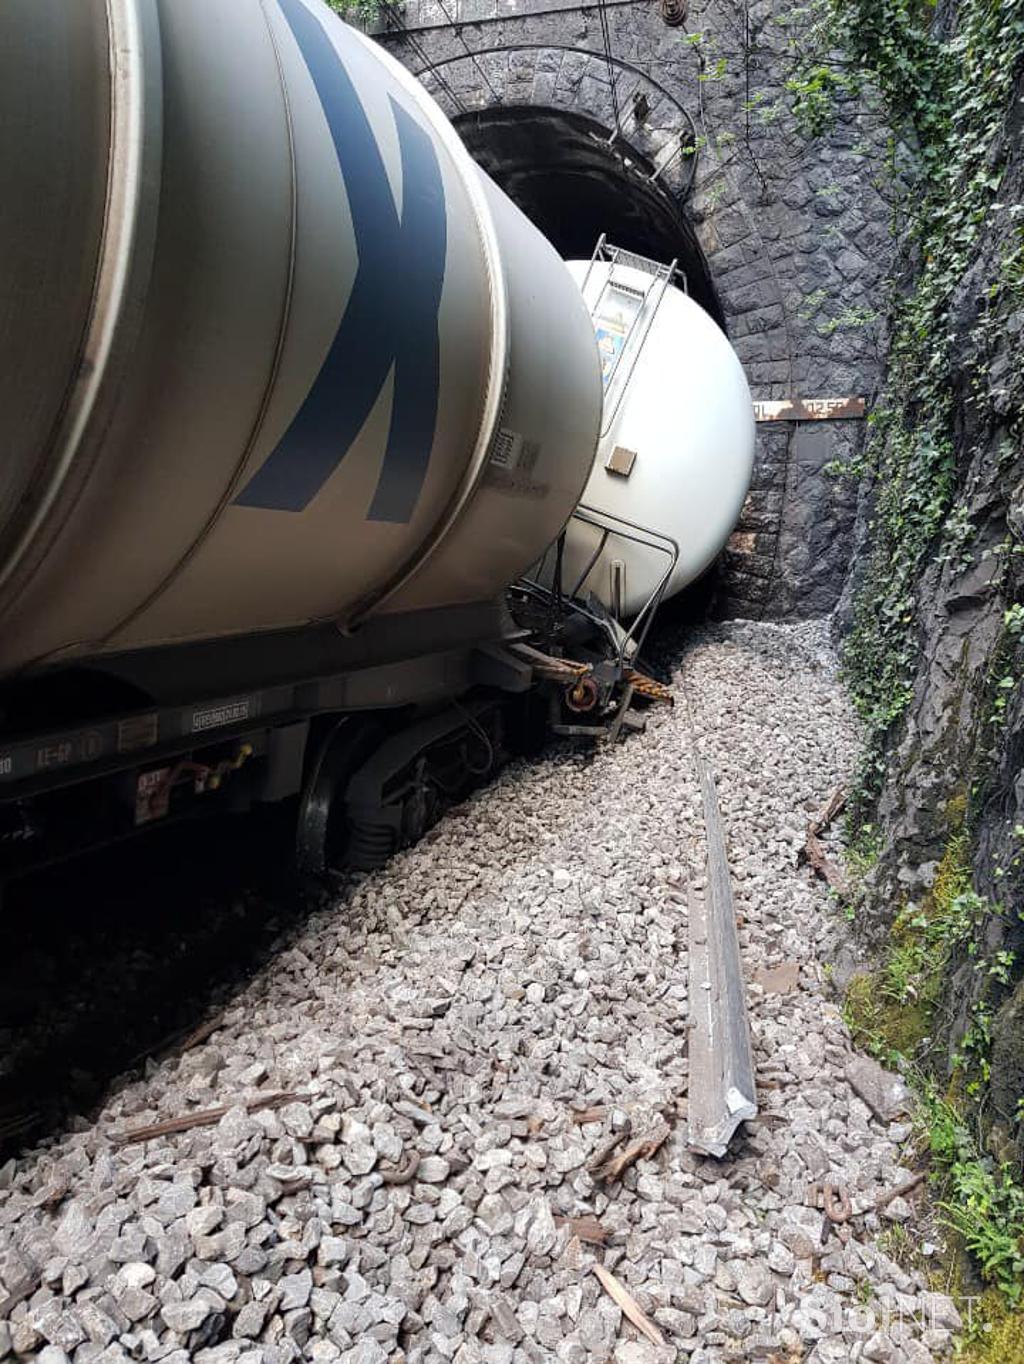 Nesreča vlaka